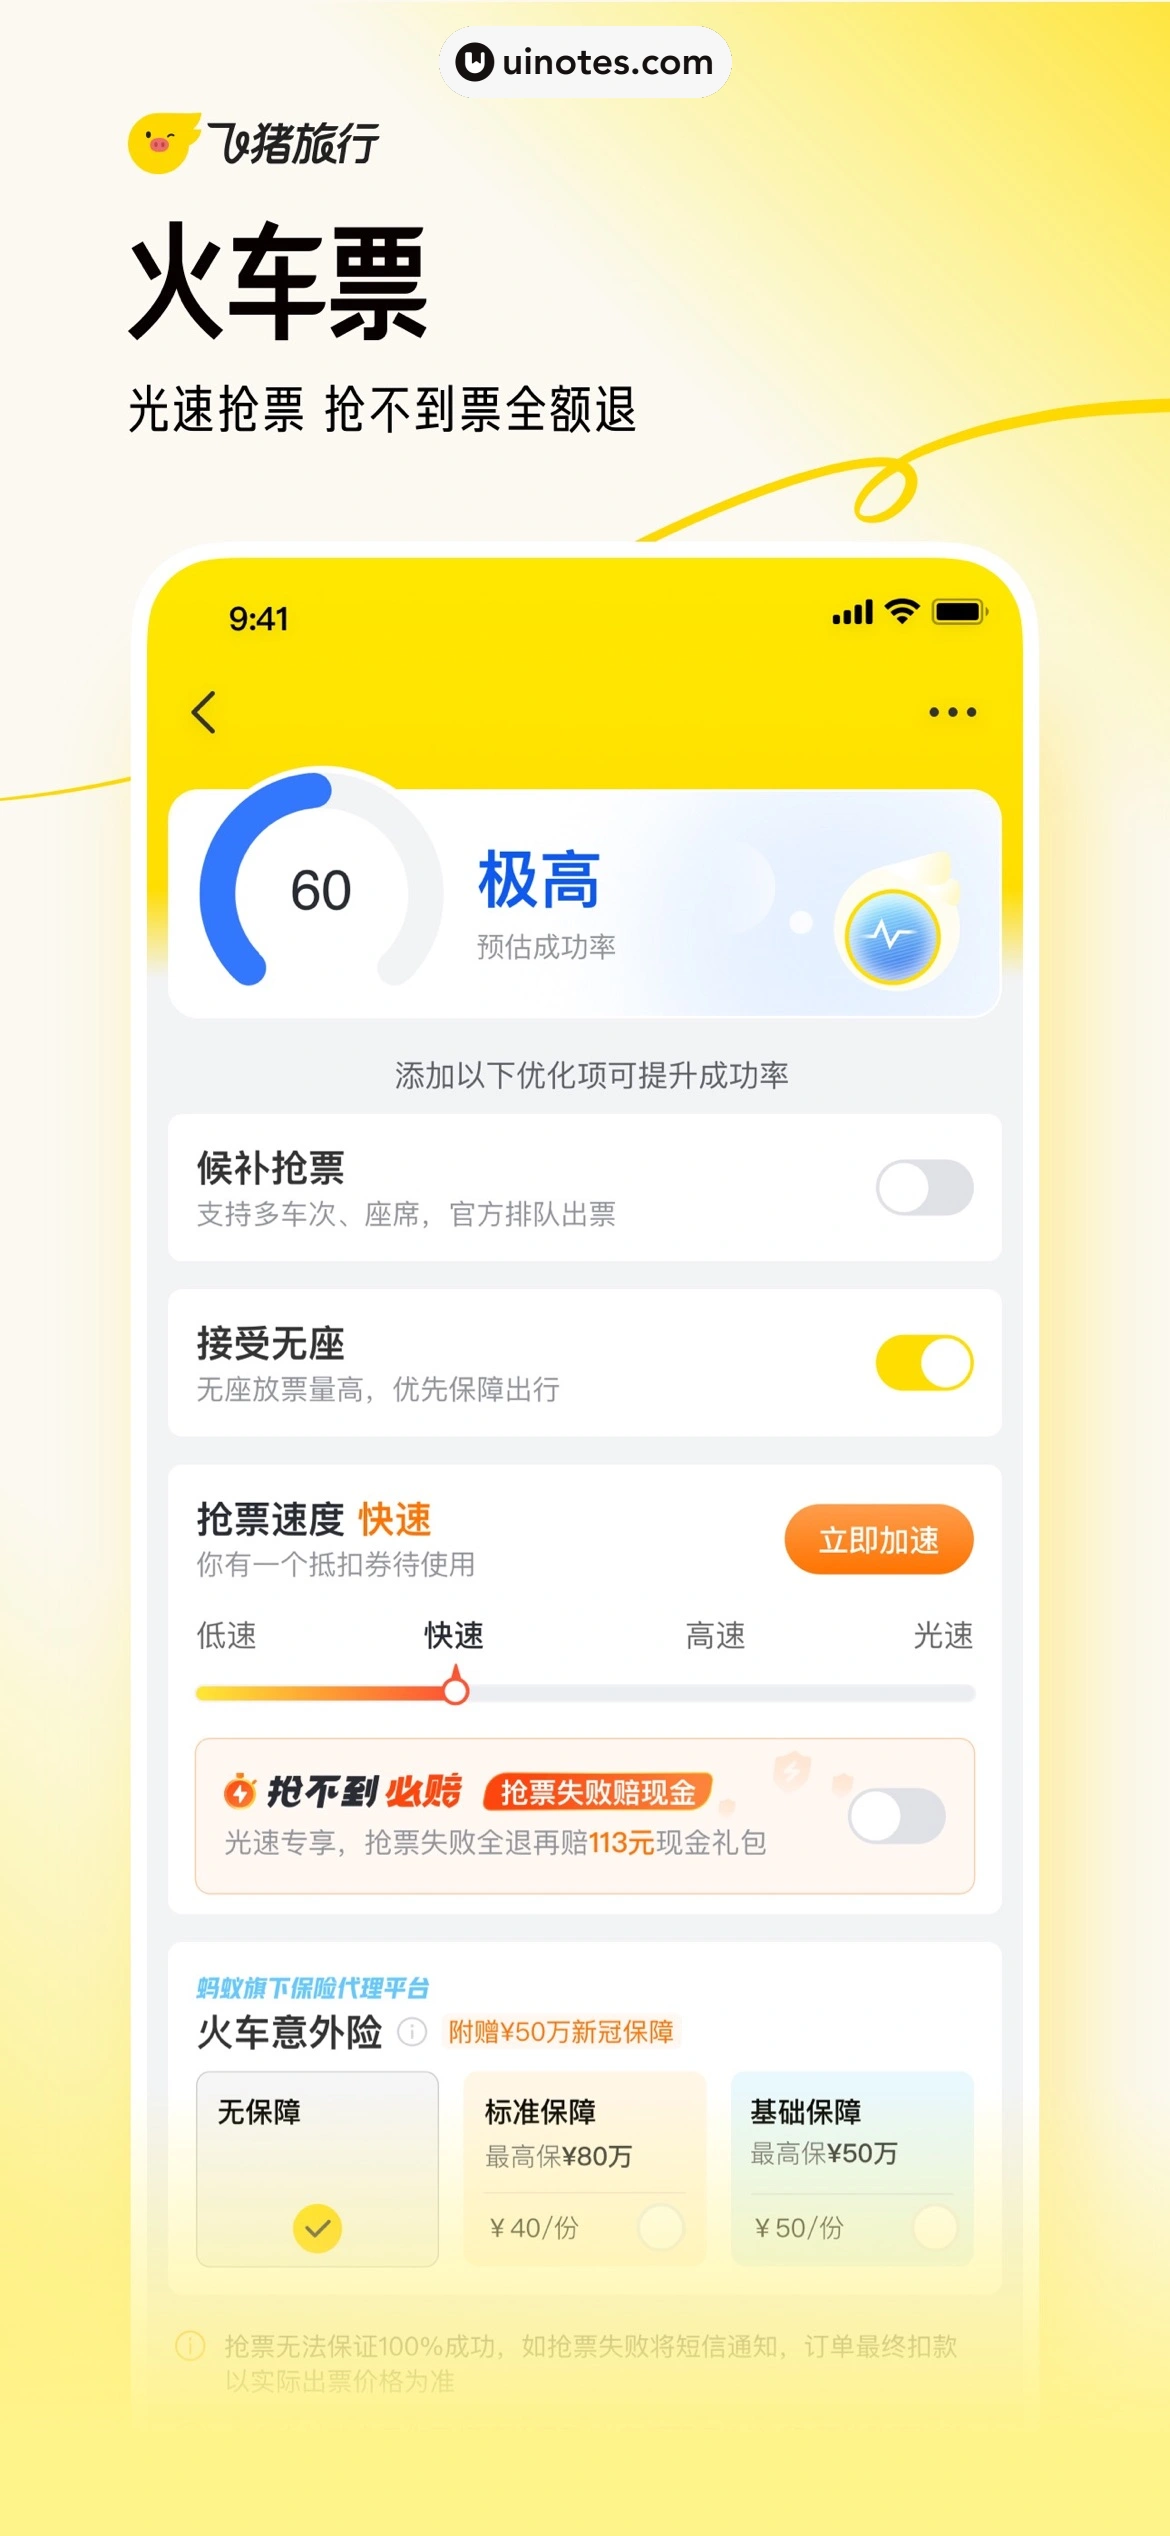 飞猪旅行 App 截图 036 - UI Notes